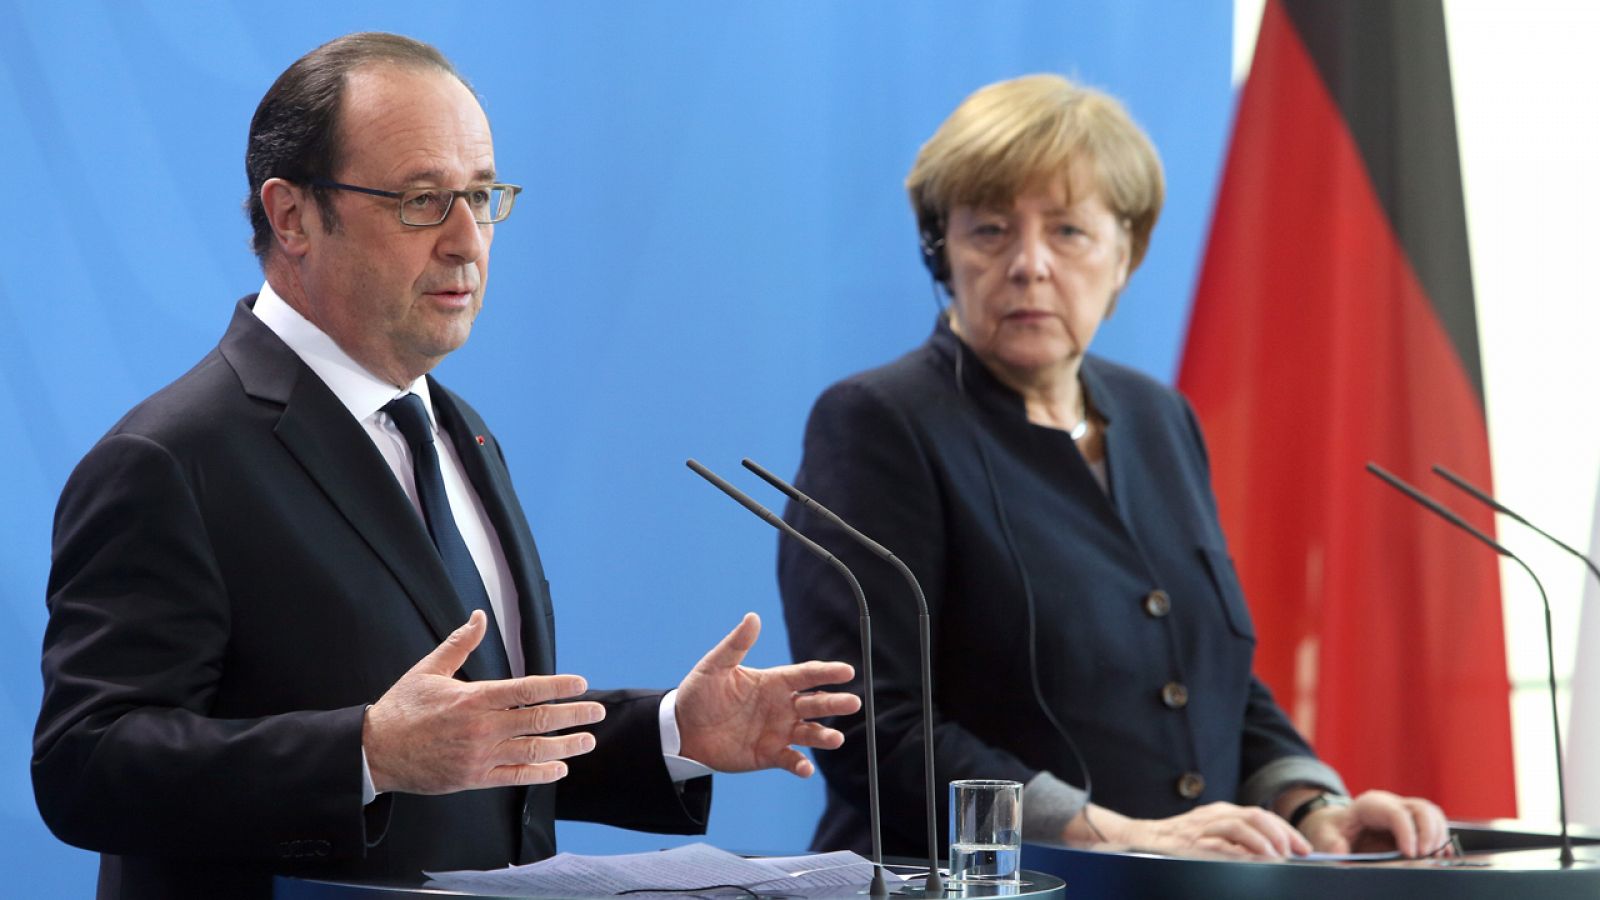 La canciller alemana, Angela Merkel, y el presidente francés, Francois Hollande, comparecen ante la prensa tras su encuentro en Berlín.